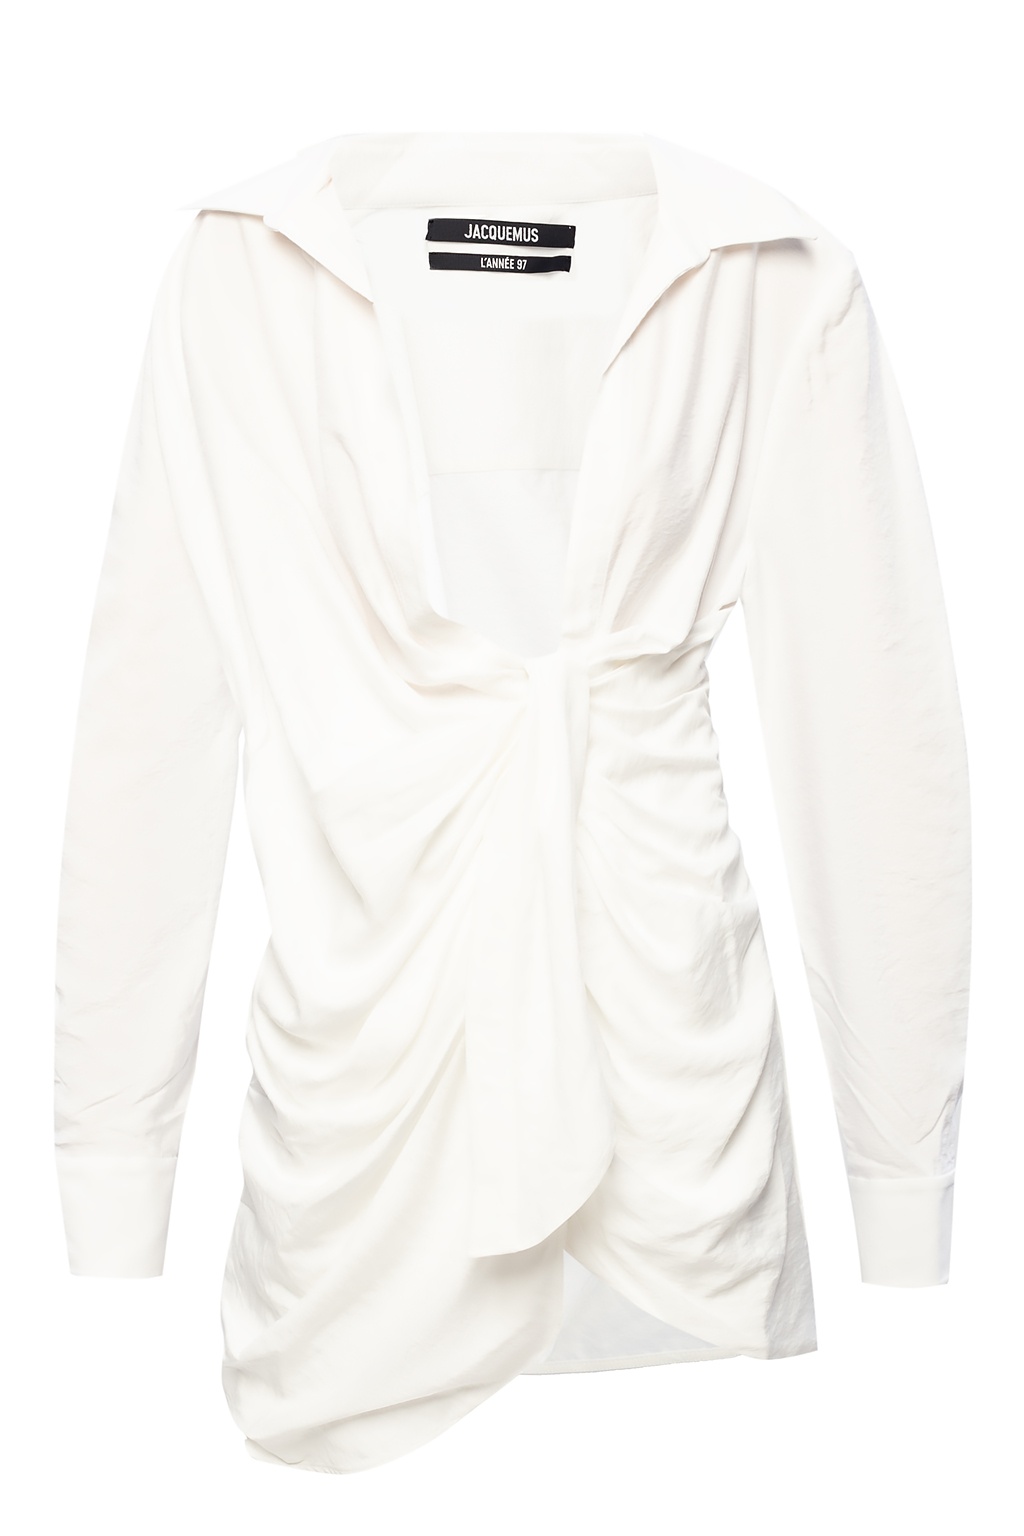 White ‘Bahia’ shirt dress Jacquemus - Vitkac GB